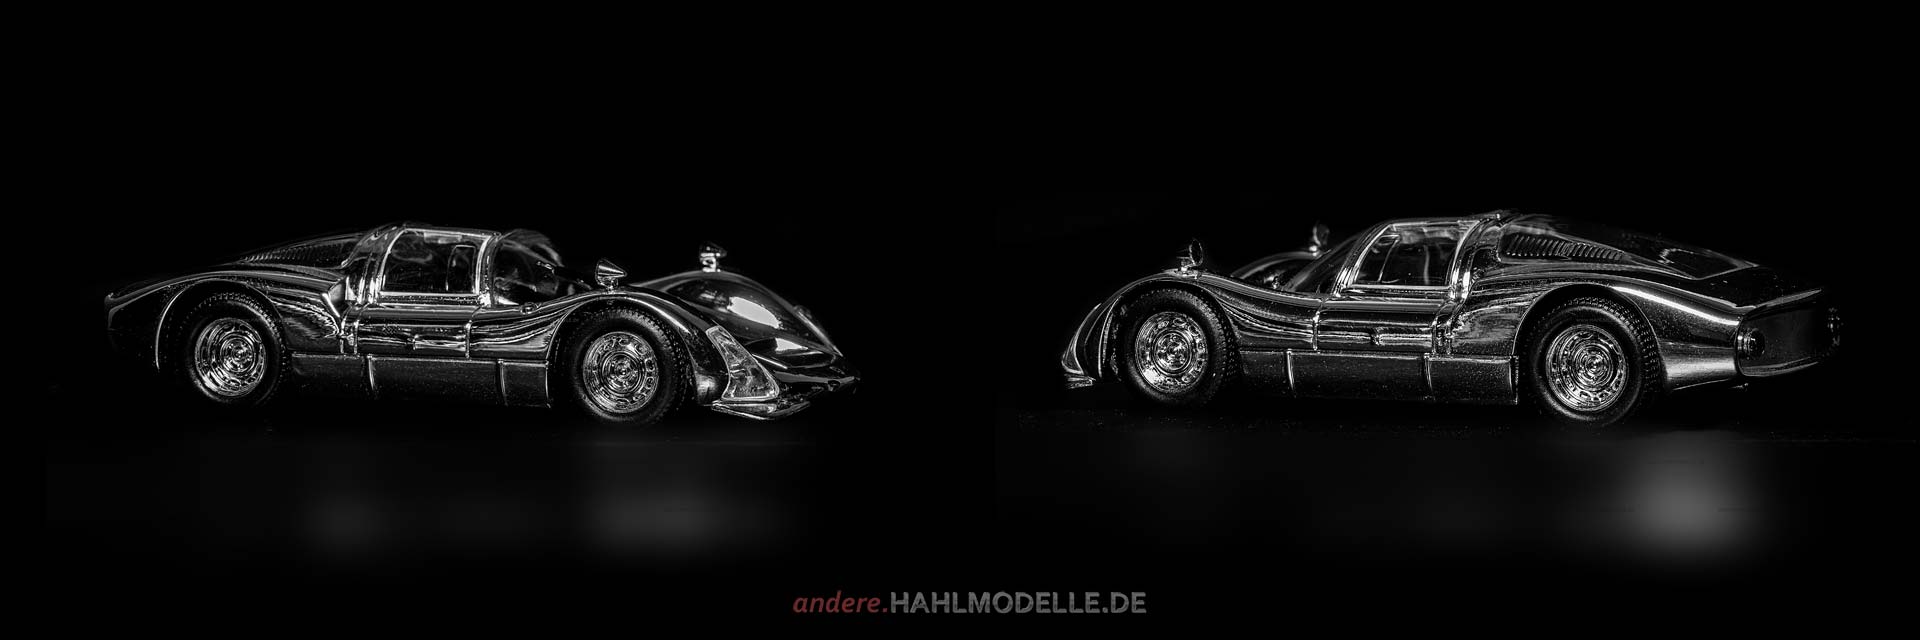 Porsche 906 | Motorsport | Ixo | 1:43 | www.andere.hahlmodelle.de